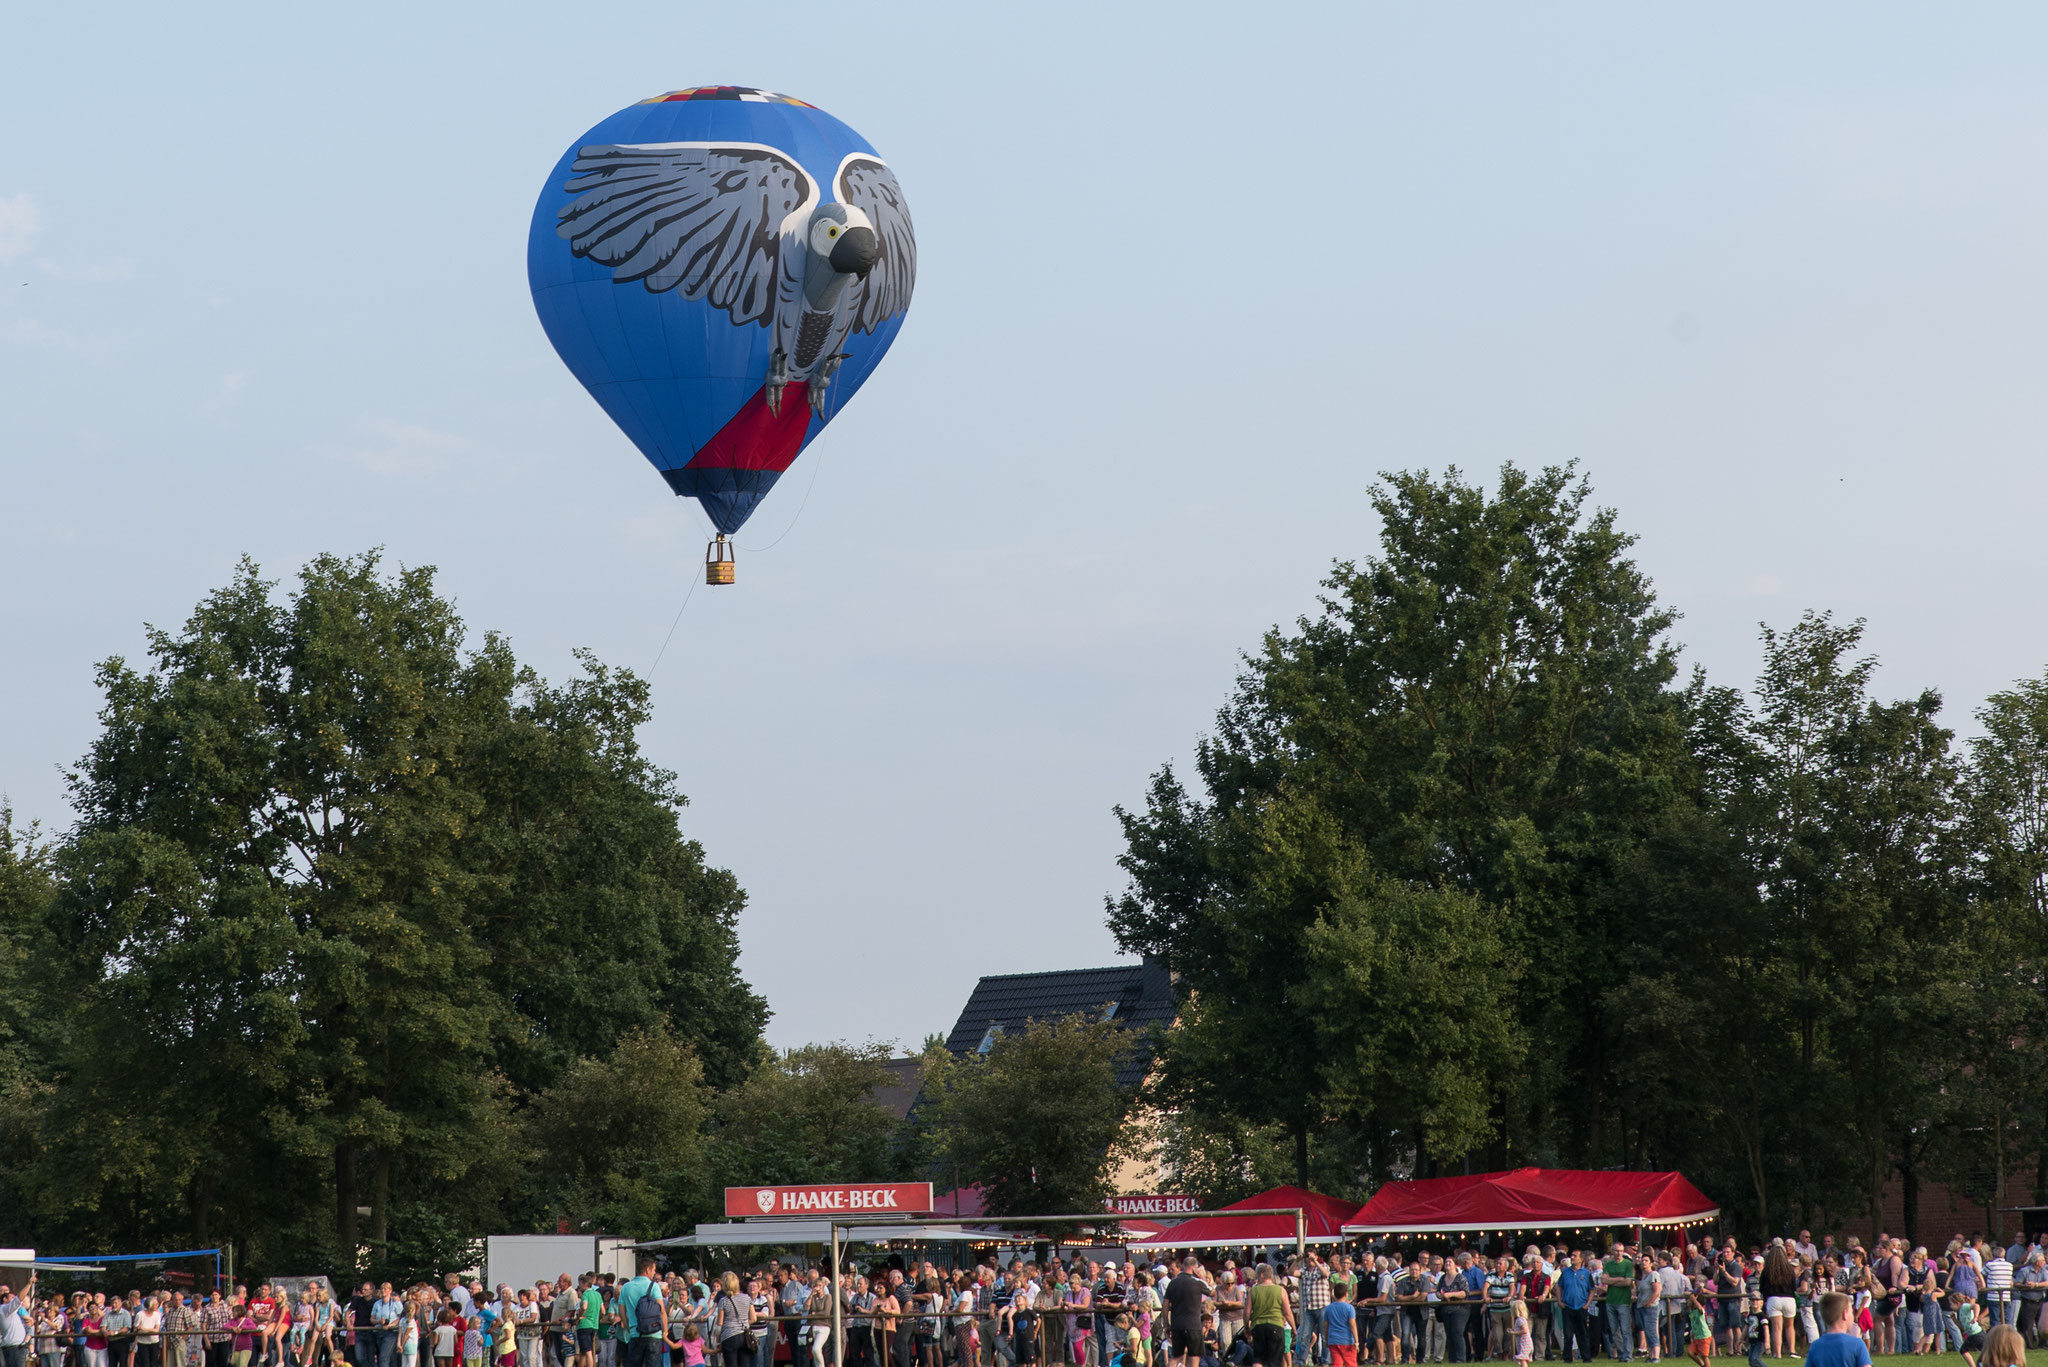  Barnstorfer Ballon-Fahrer Festival